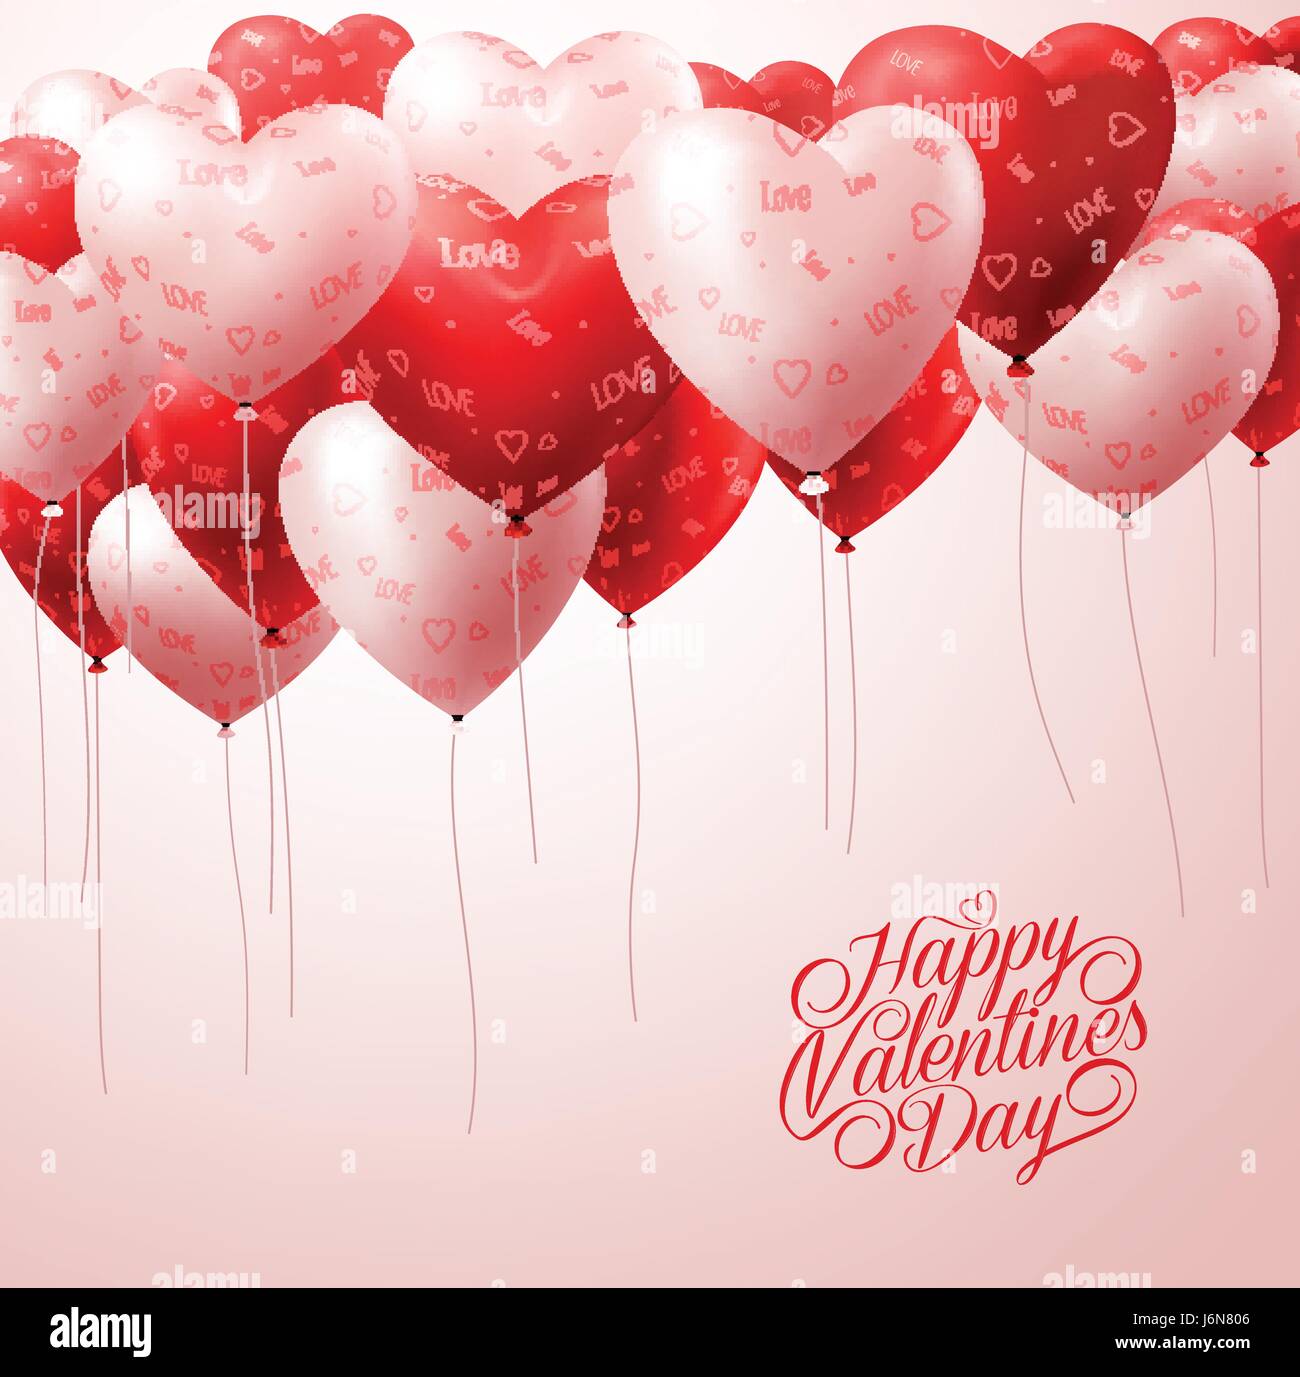 Weiße und rote Herz Luftballons fliegen mit Muster in weiß für Valentines Greetings Hintergrund. Vektor-Illustration Stock Vektor